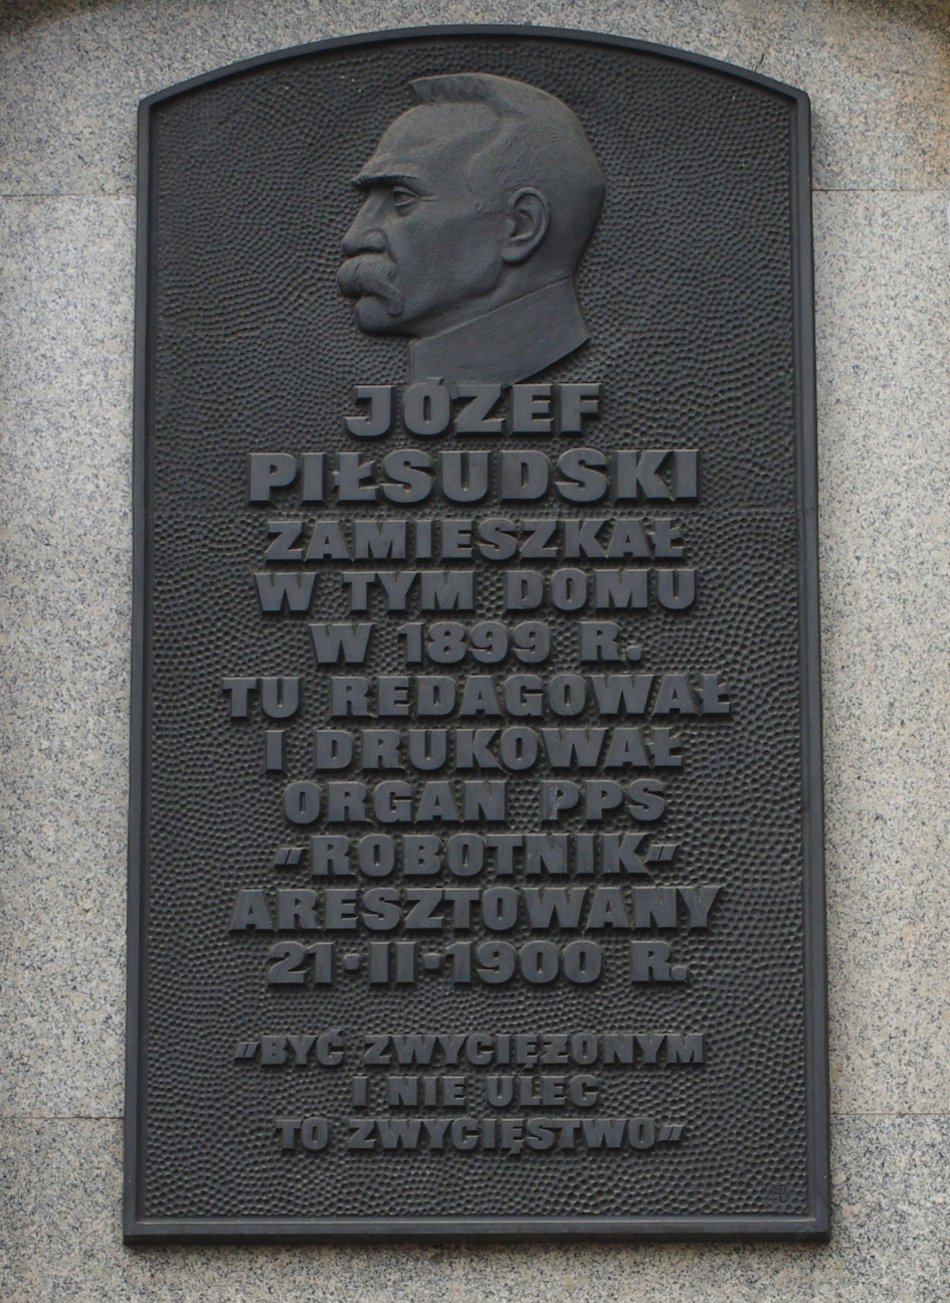 Józef Piłsudski z żoną aresztowani na Wschodniej w Łodzi